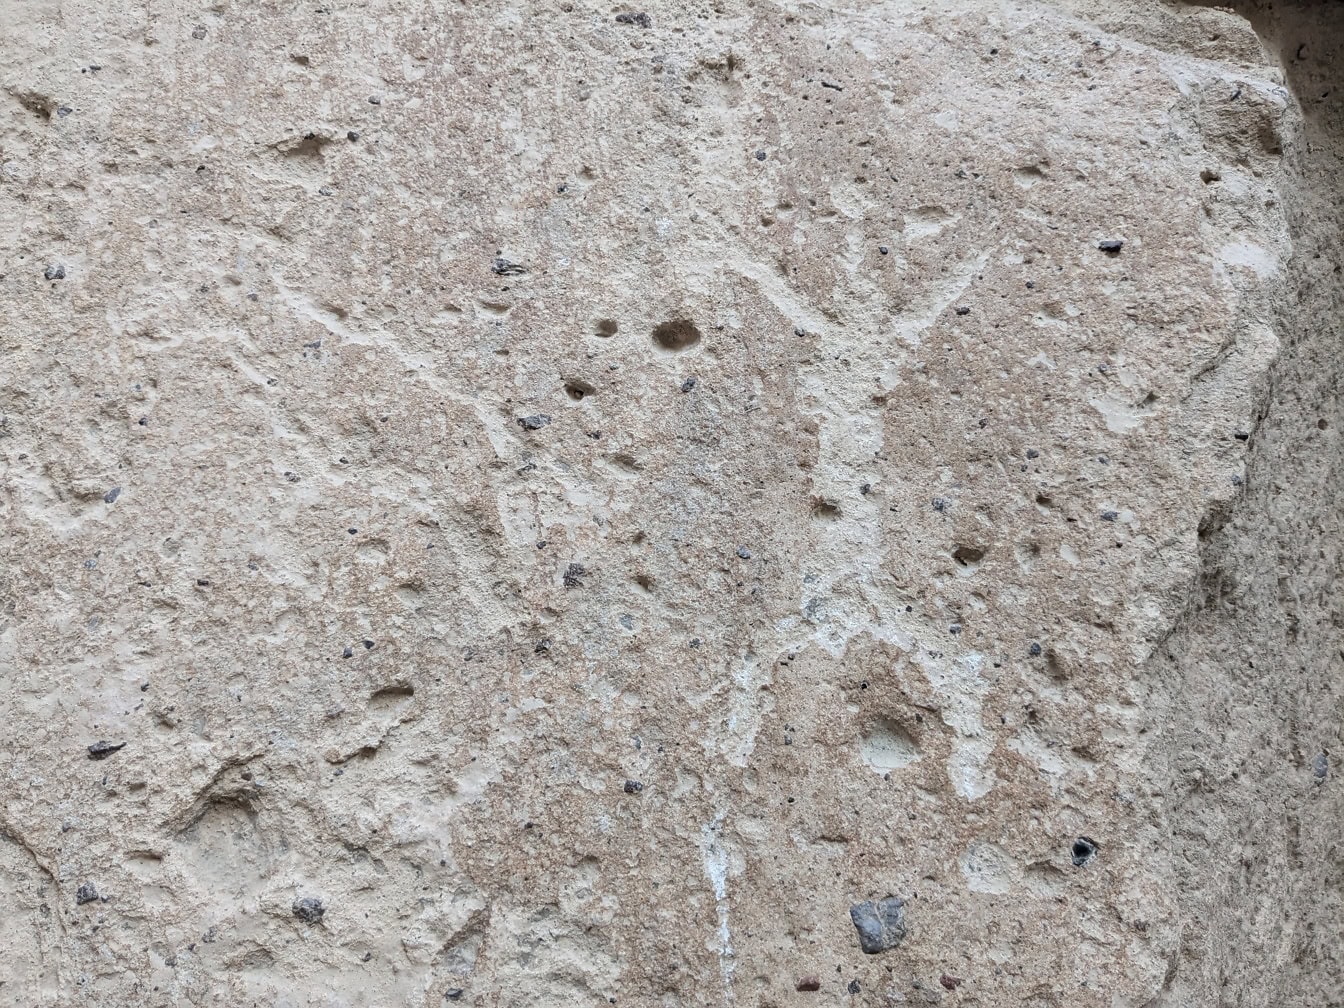 Petroglyf vytesaný do kamene zobrazující člověka z doby kamenné s nataženýma rukama a nohama